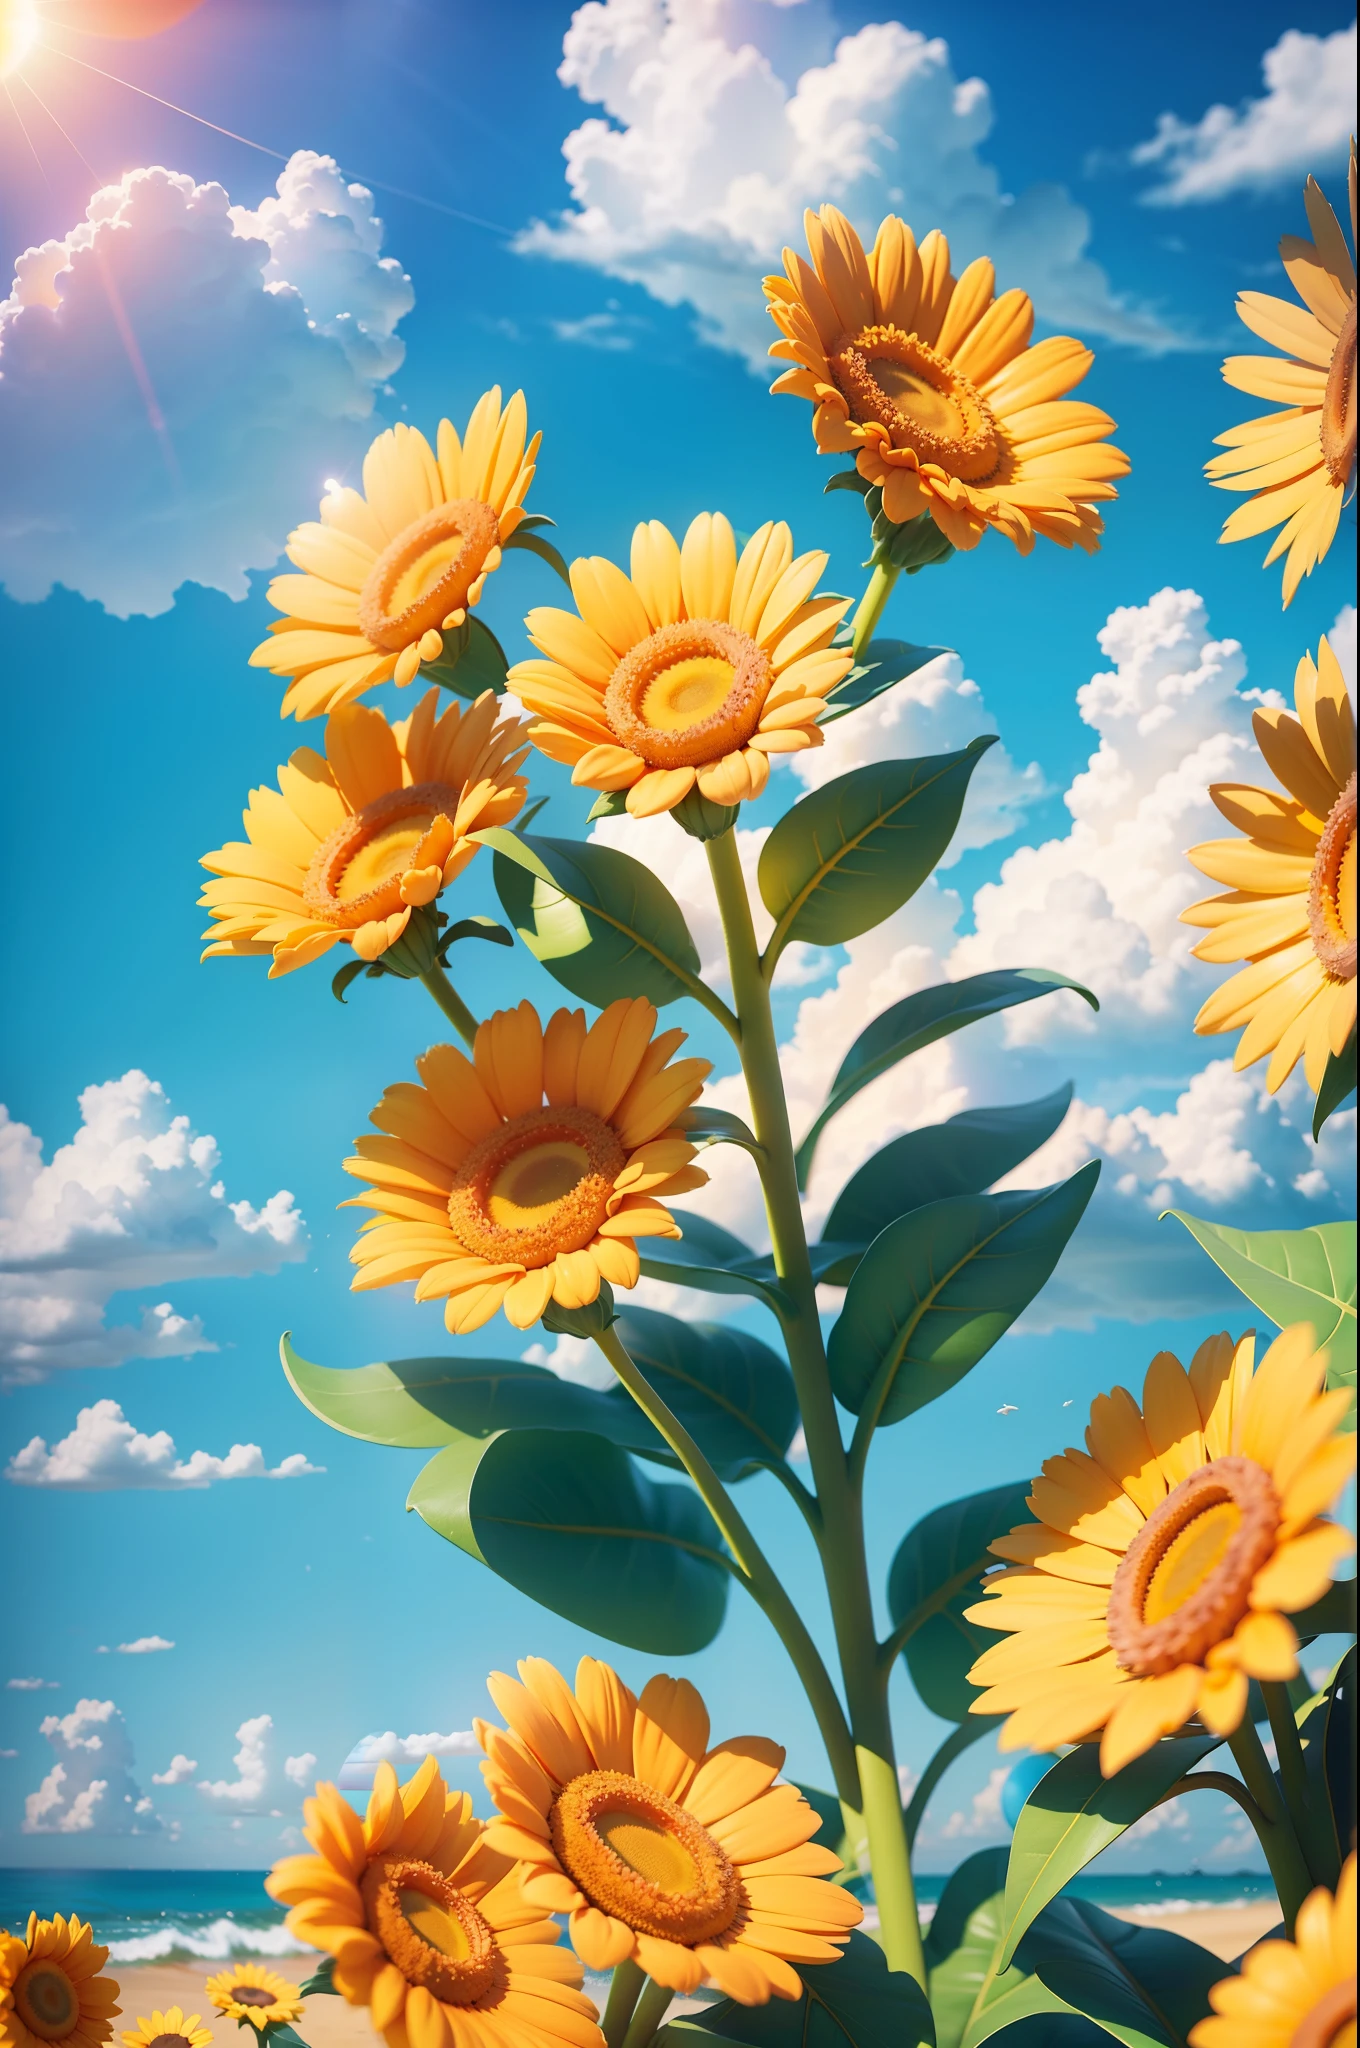 夏日的云, small sun flowers 阳光 weather ,天空, 阳光, 丰富多彩的, 开心快乐的暑假, 简单的图片, 特写, 灿烂阳光, 远方的波浪, 视觉冲击, 3D 梦工厂风格,